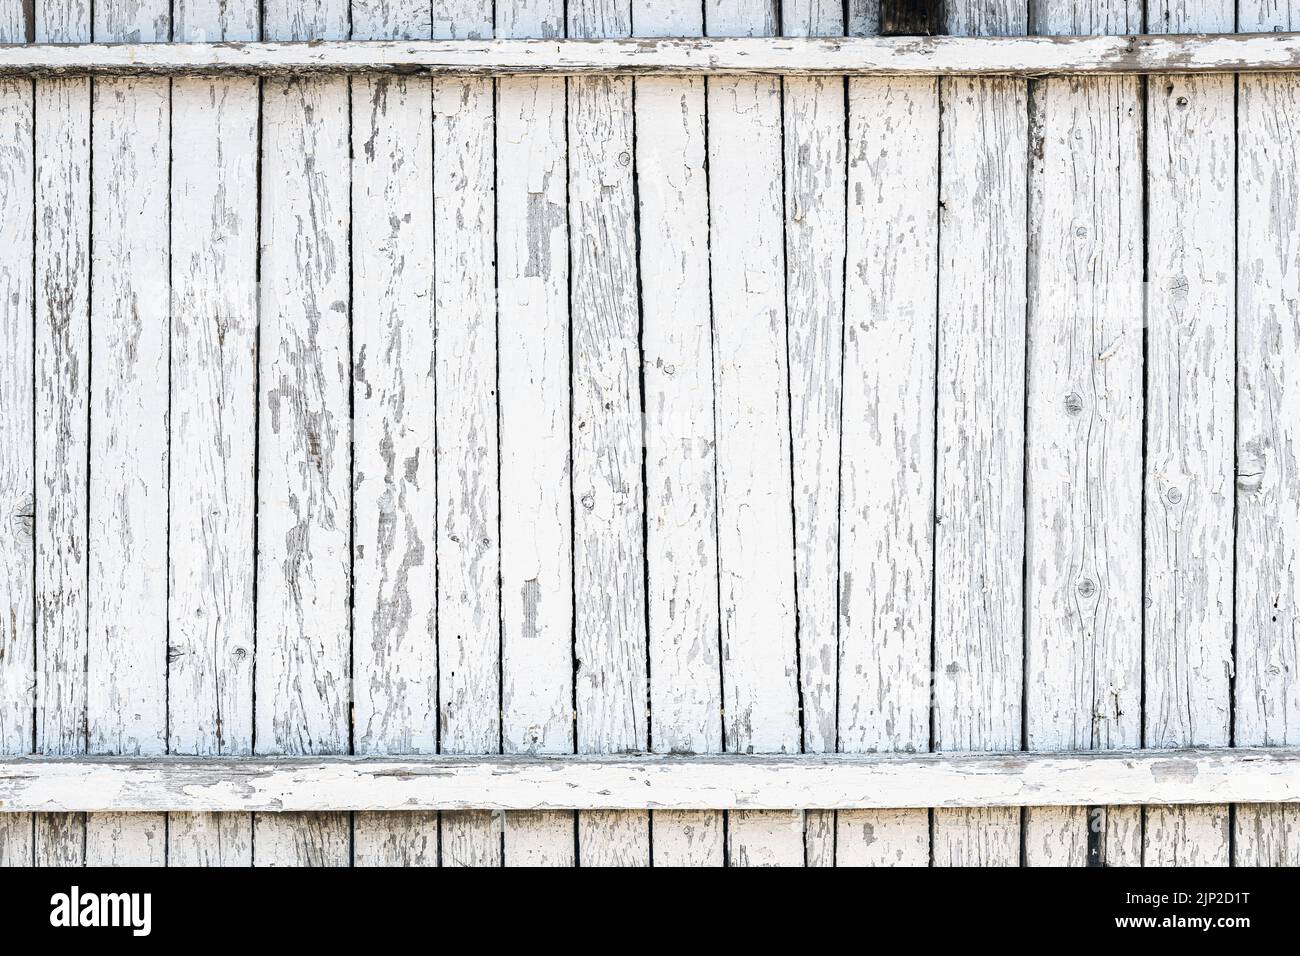 Textura de una valla de madera vieja pintada de blanco con pintura descascarándose como fondo grunge Foto de stock